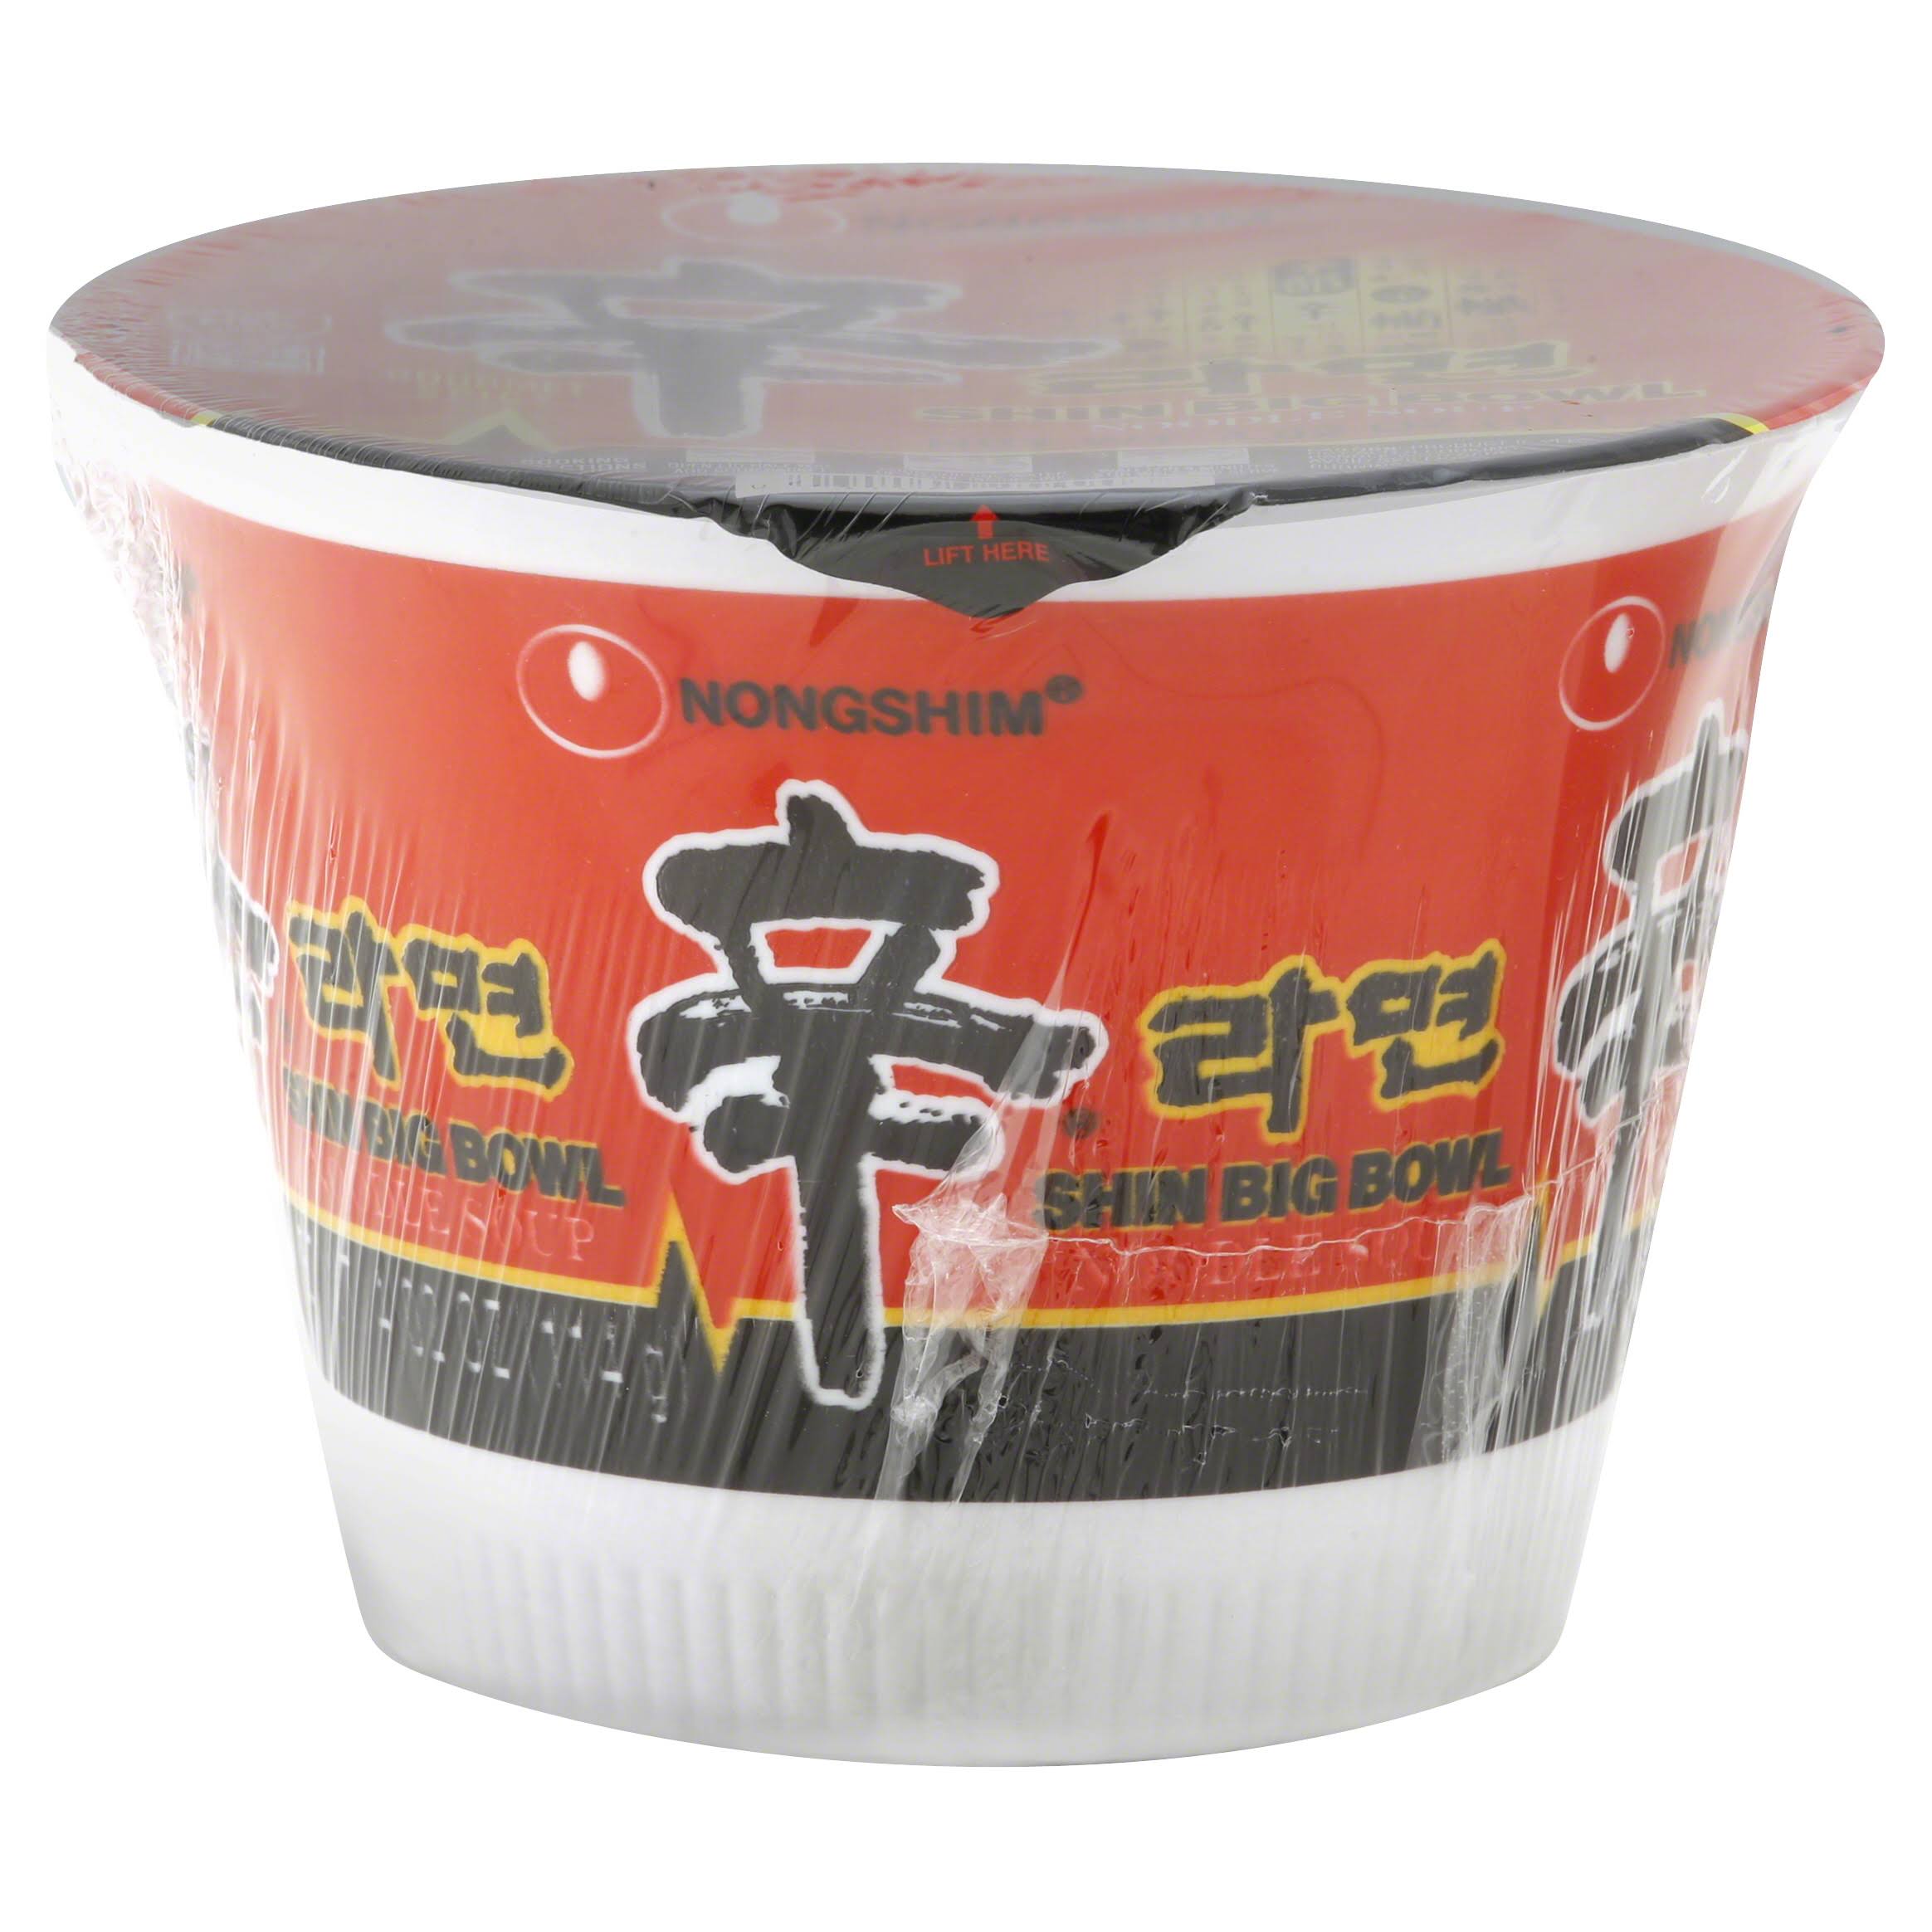 Nongshim Big Noodle Soup - Hot & Spicy, 114g